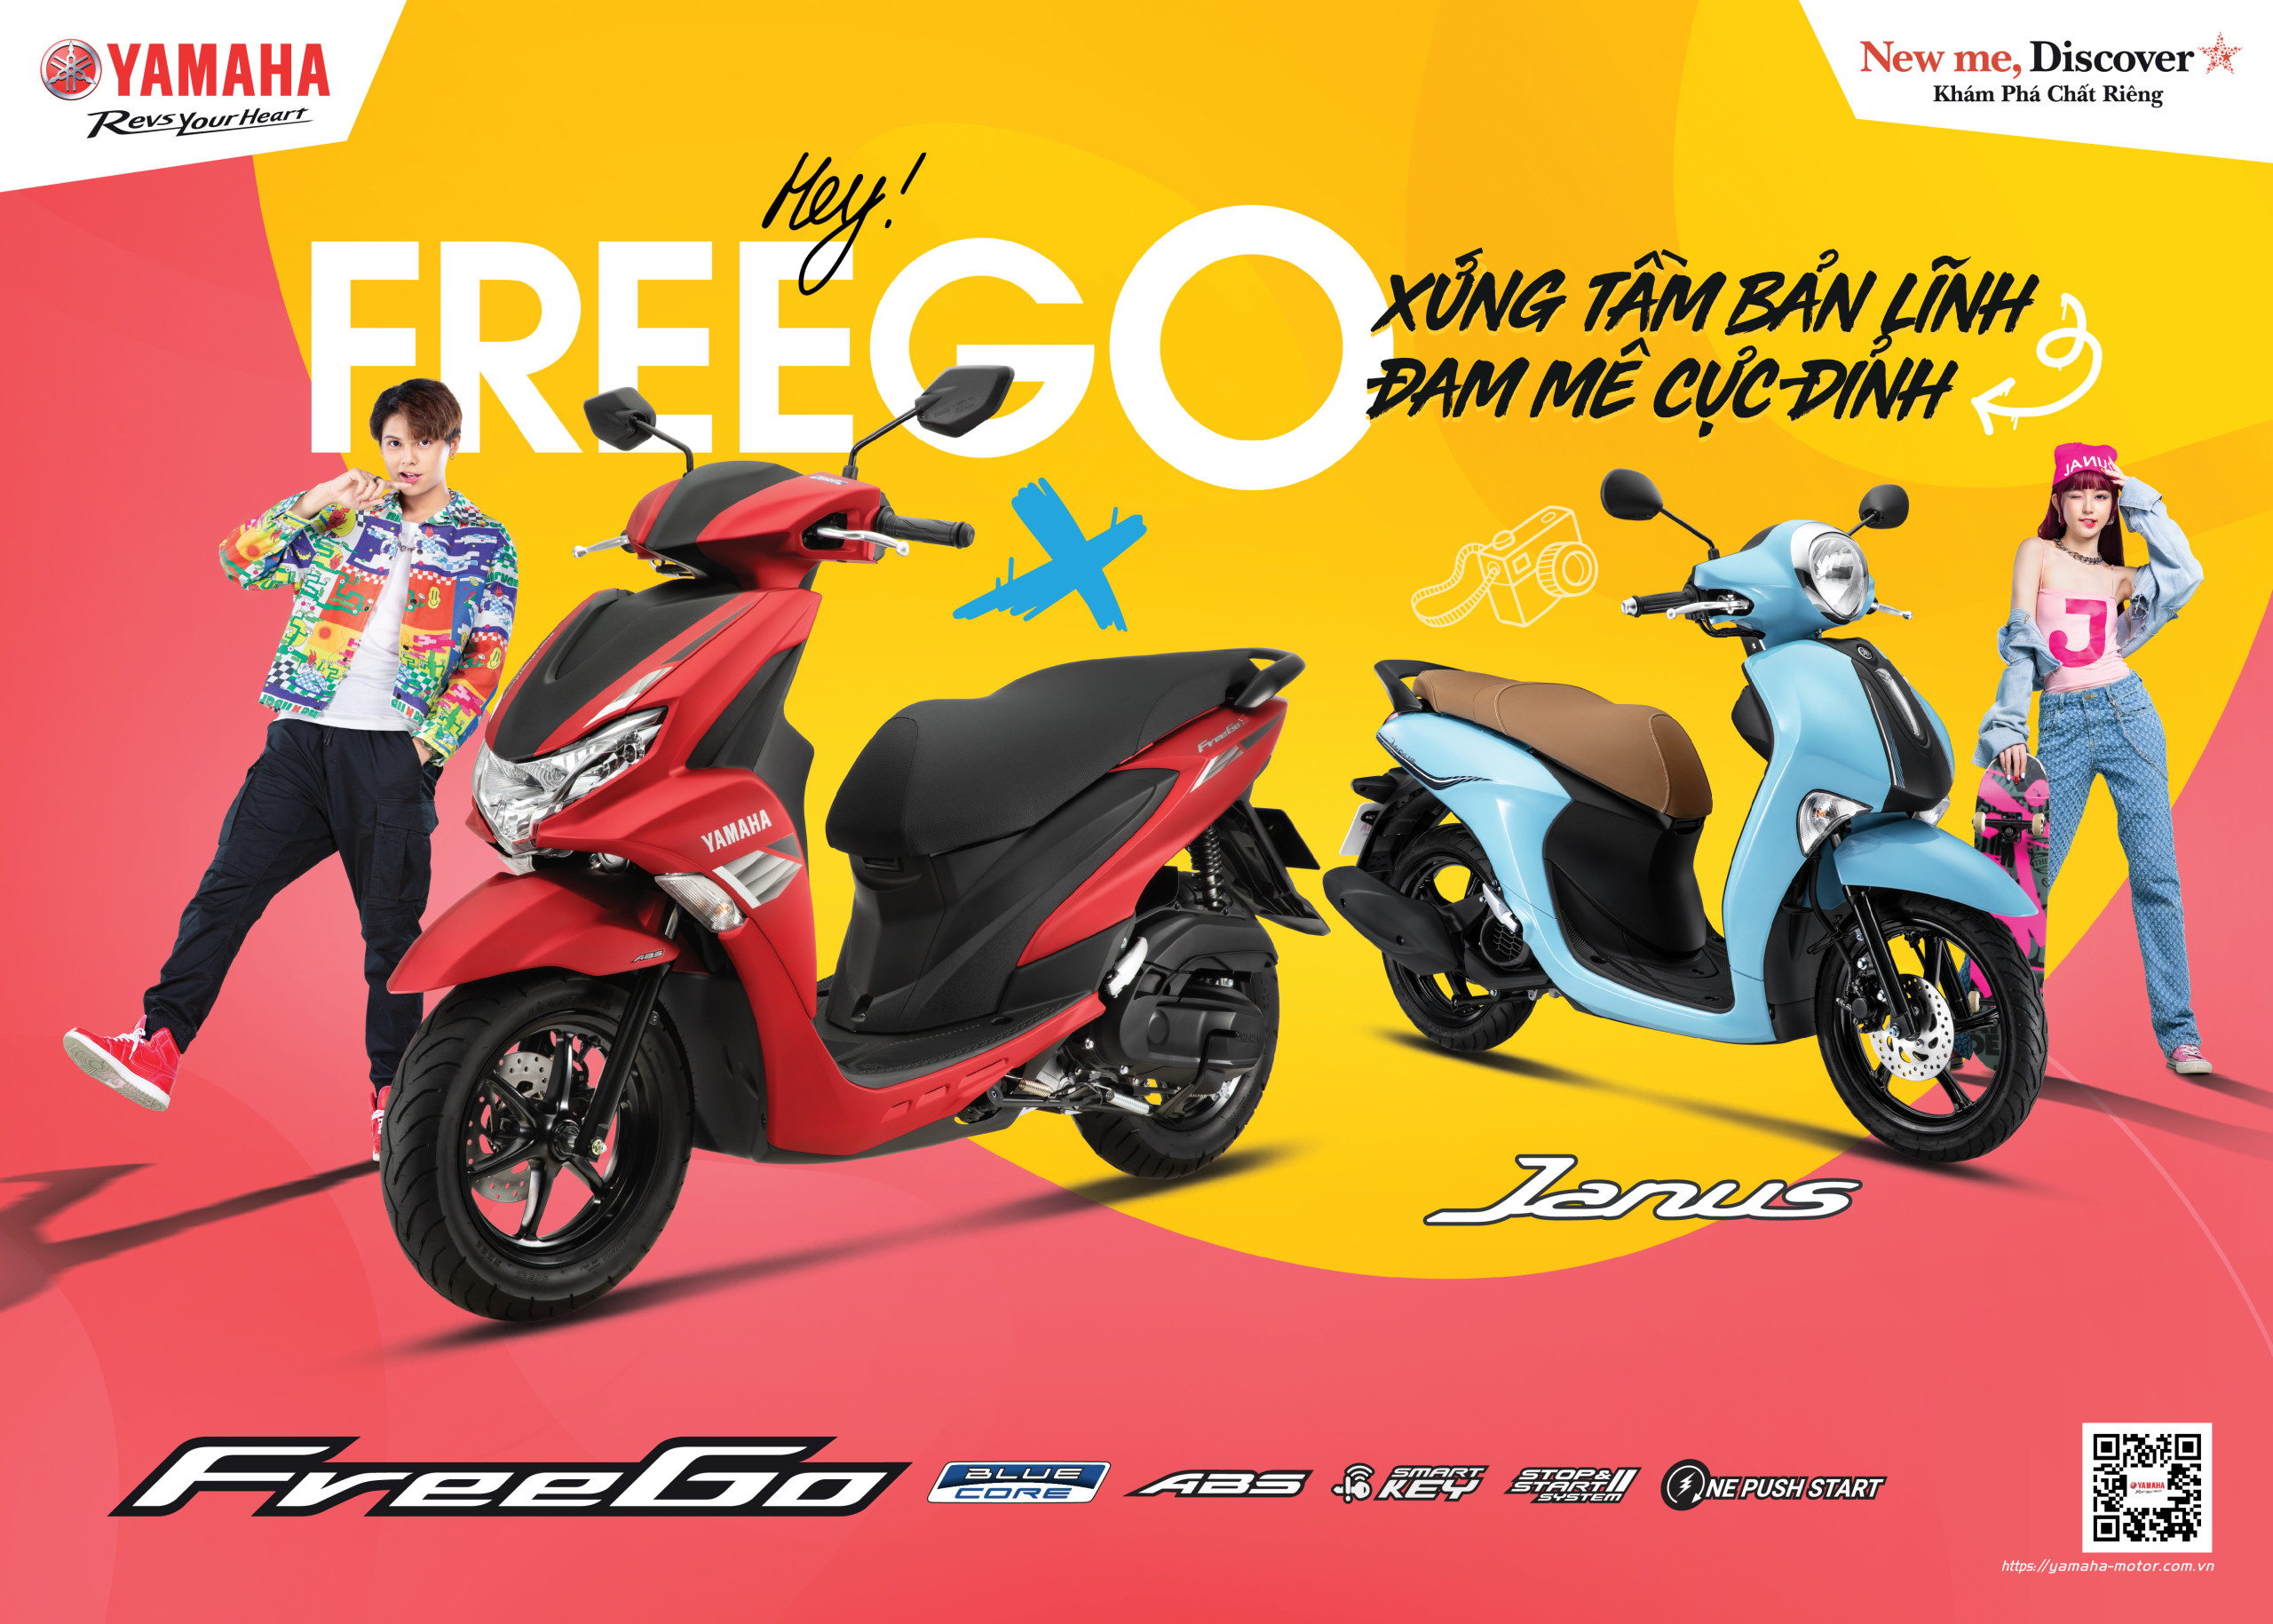 FREEGO 2022: “XỨNG TẦM BẢN LĨNH, ĐAM MÊ CỰC ĐỈNH” - Yamaha Motor Việt Nam